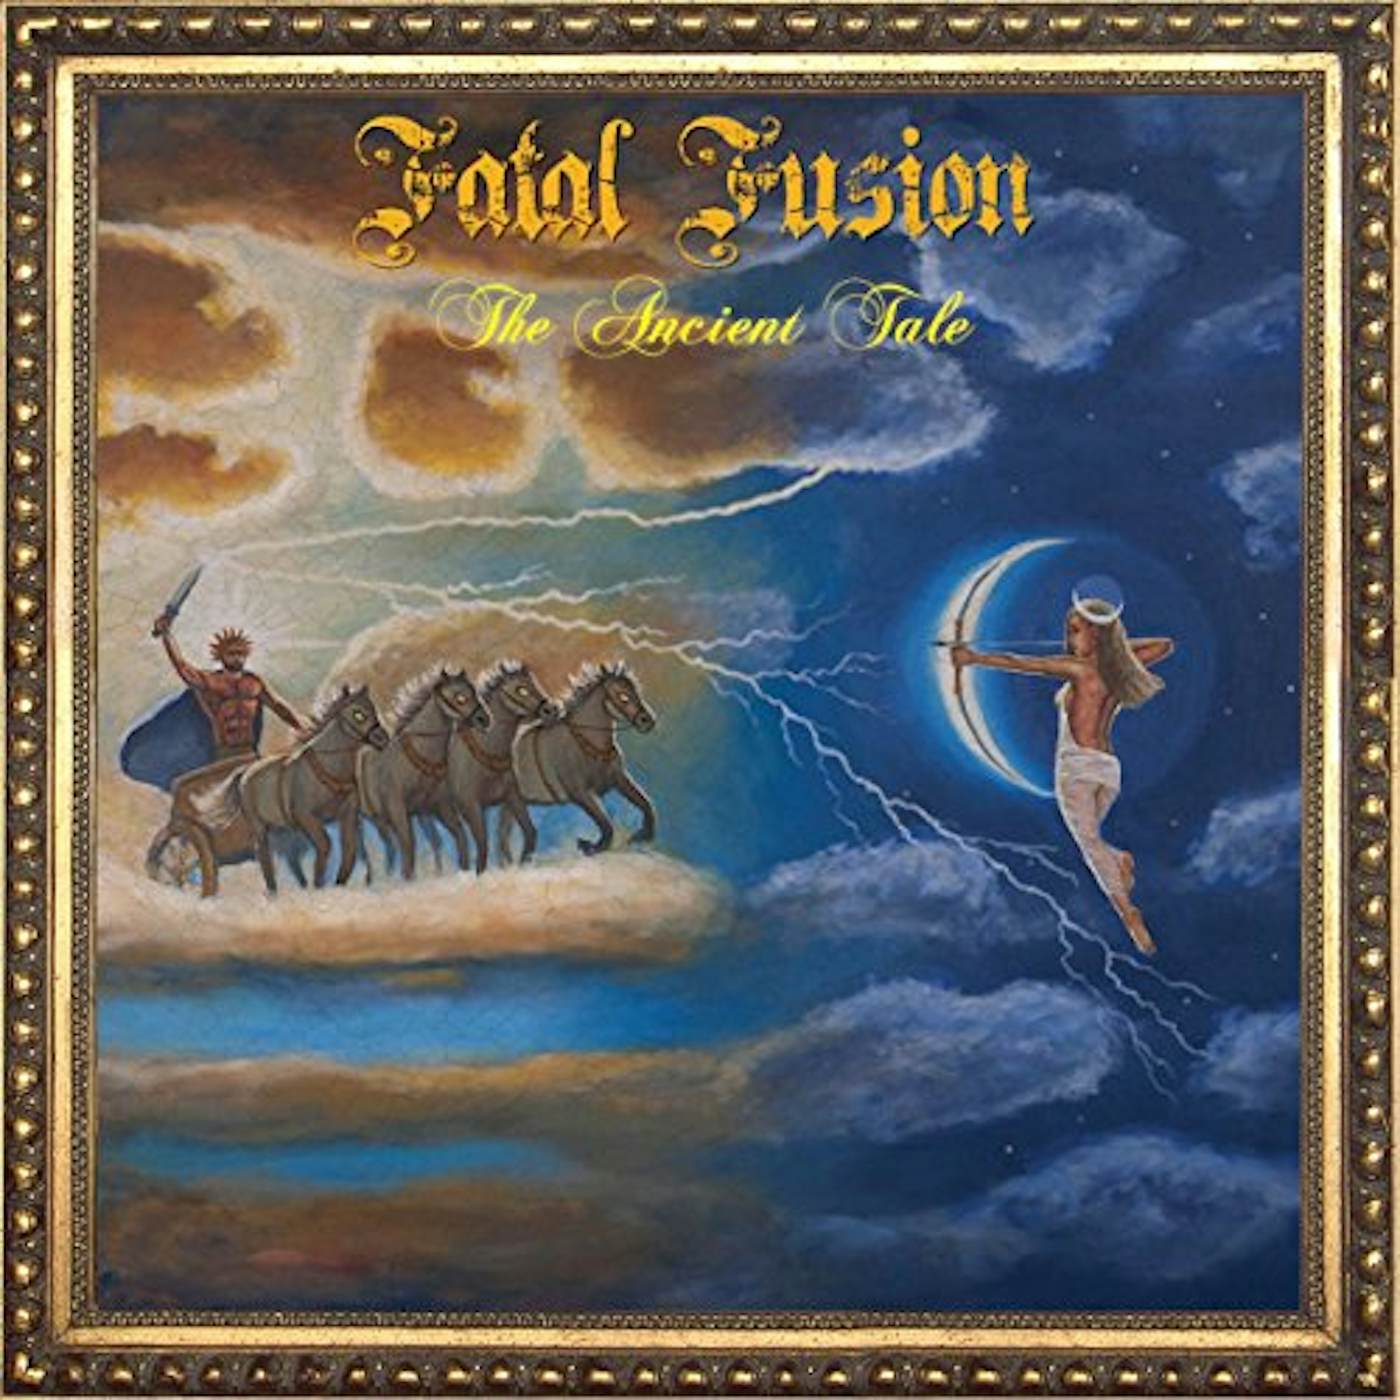 Fatal Fusion ANCIENT TALE Vinyl Record